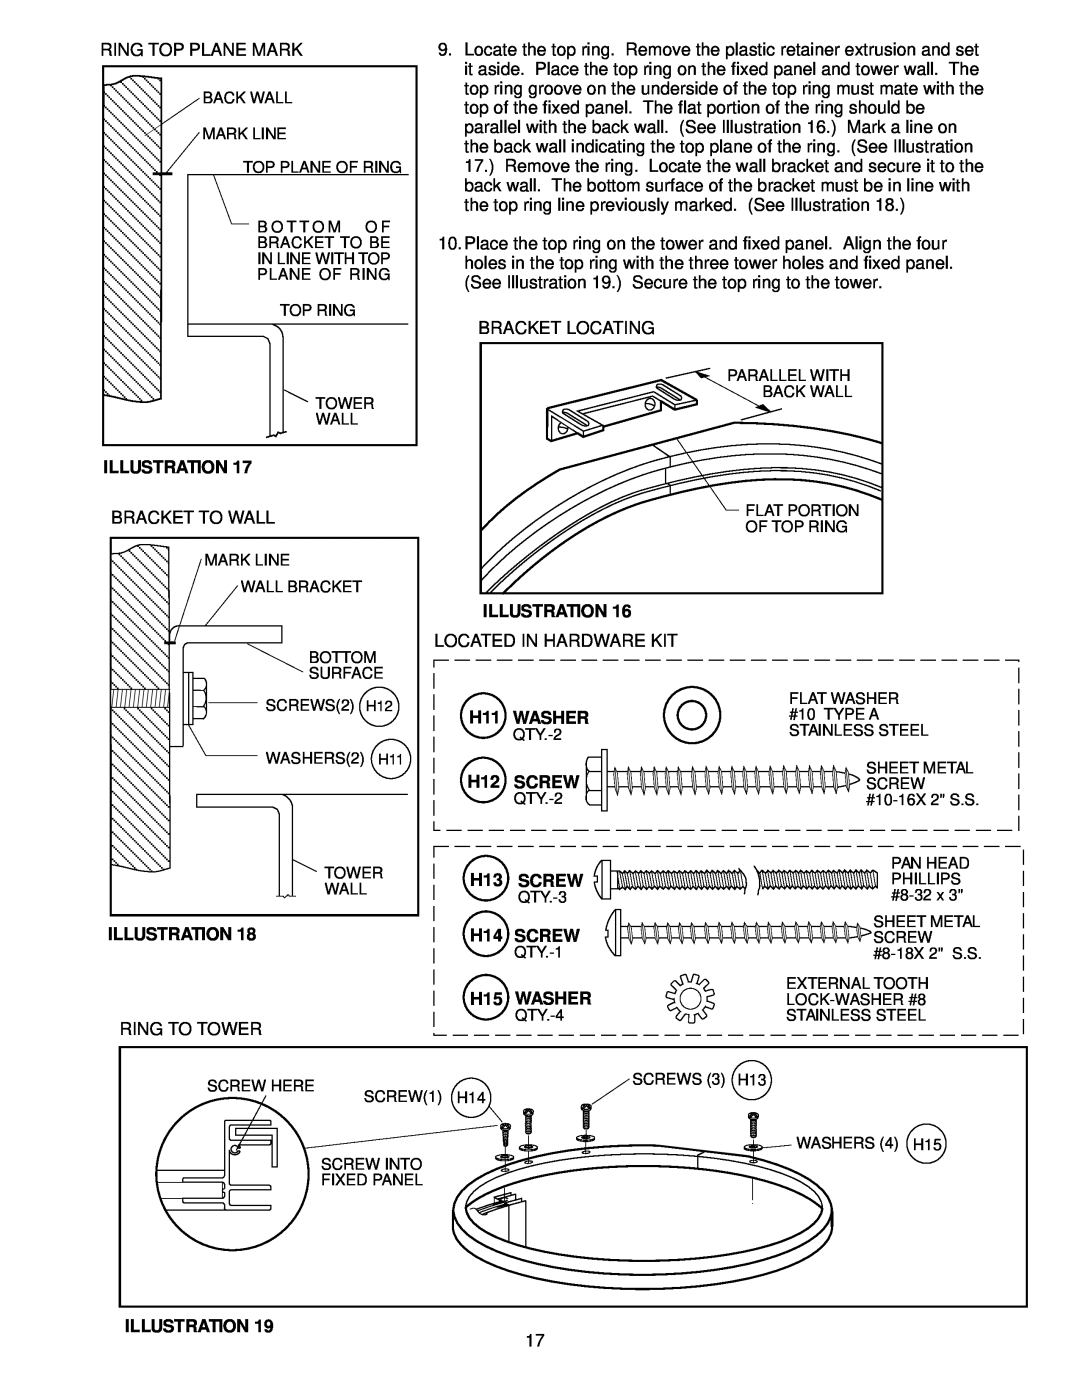 Jacuzzi J-SHOWER TOWERTM manual Illustration, H11 WASHER, H12 SCREW, H13 SCREW, H14 SCREW, H15 WASHER 